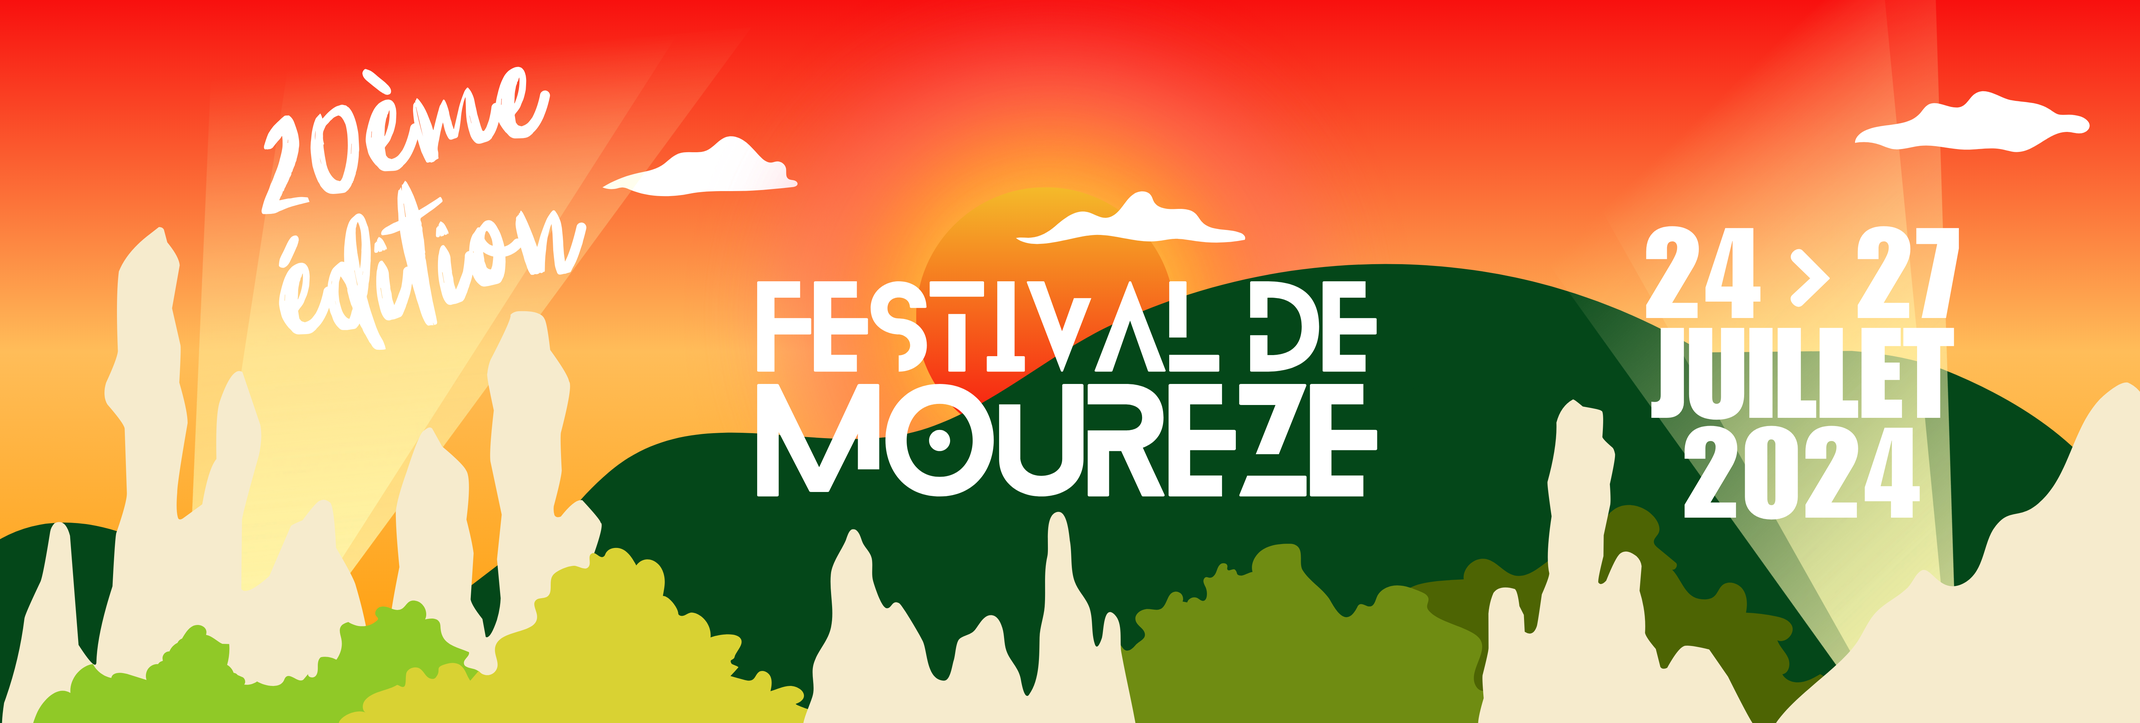 (c) Festivaldemoureze.com